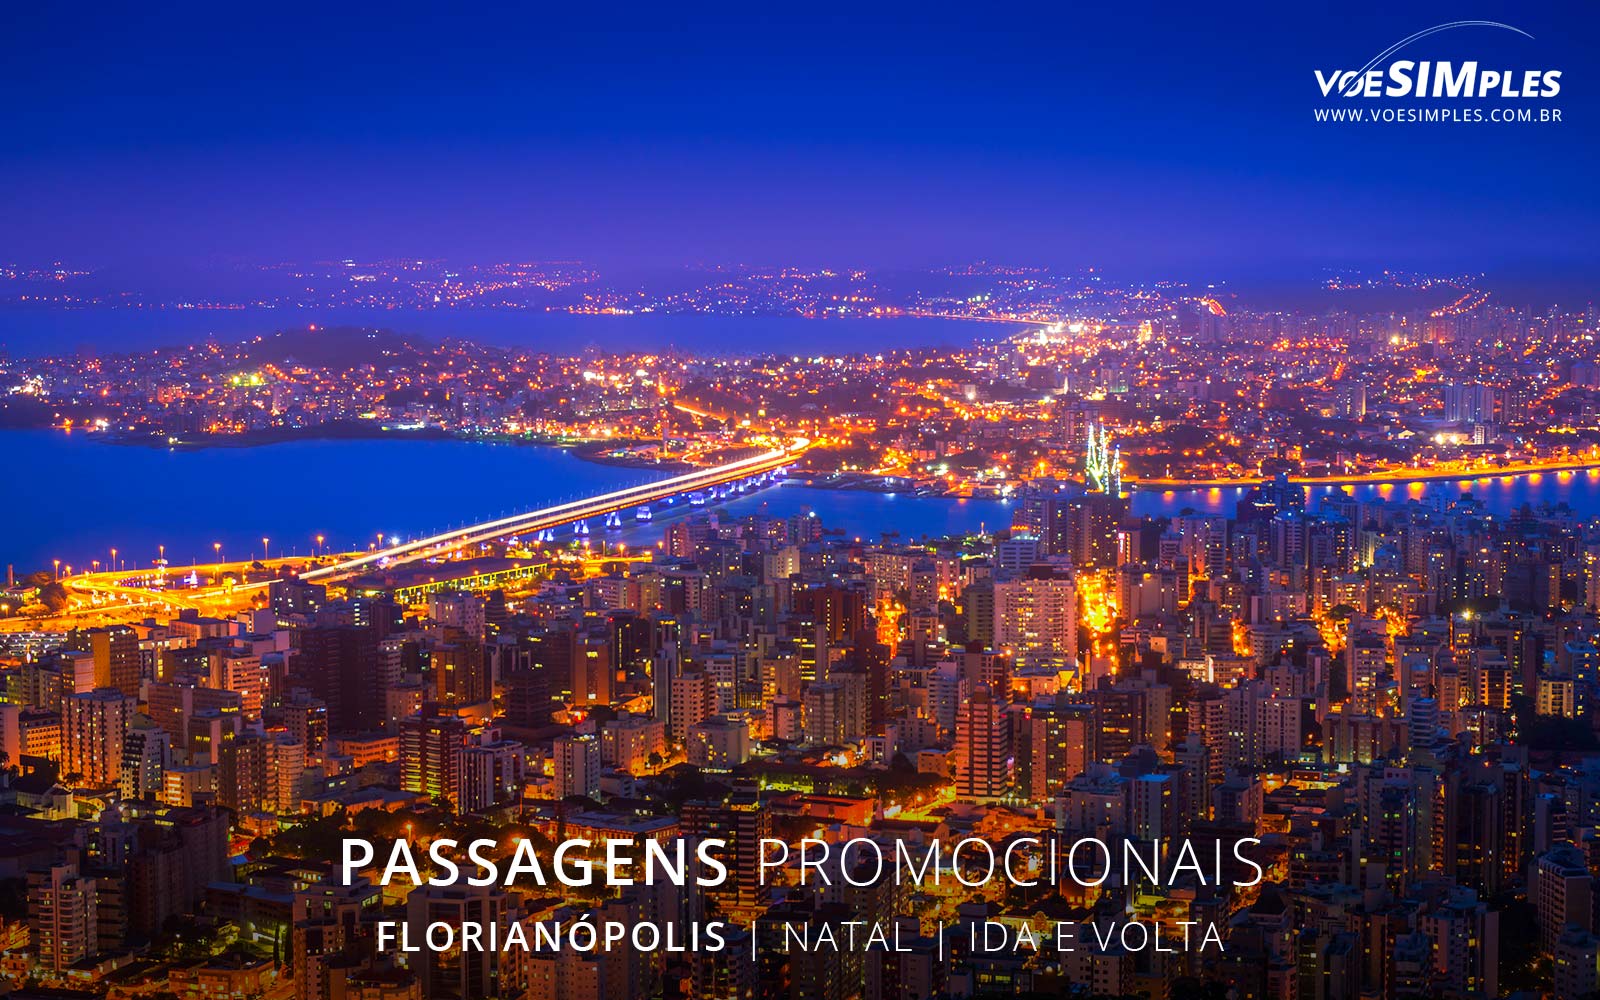 ✈️ Passagem aérea promo feriado de natal 2016 em Florianópolis a partir de  R$ 383,80 ida e volta » Voe Simples Passagens Aéreas Promocionais